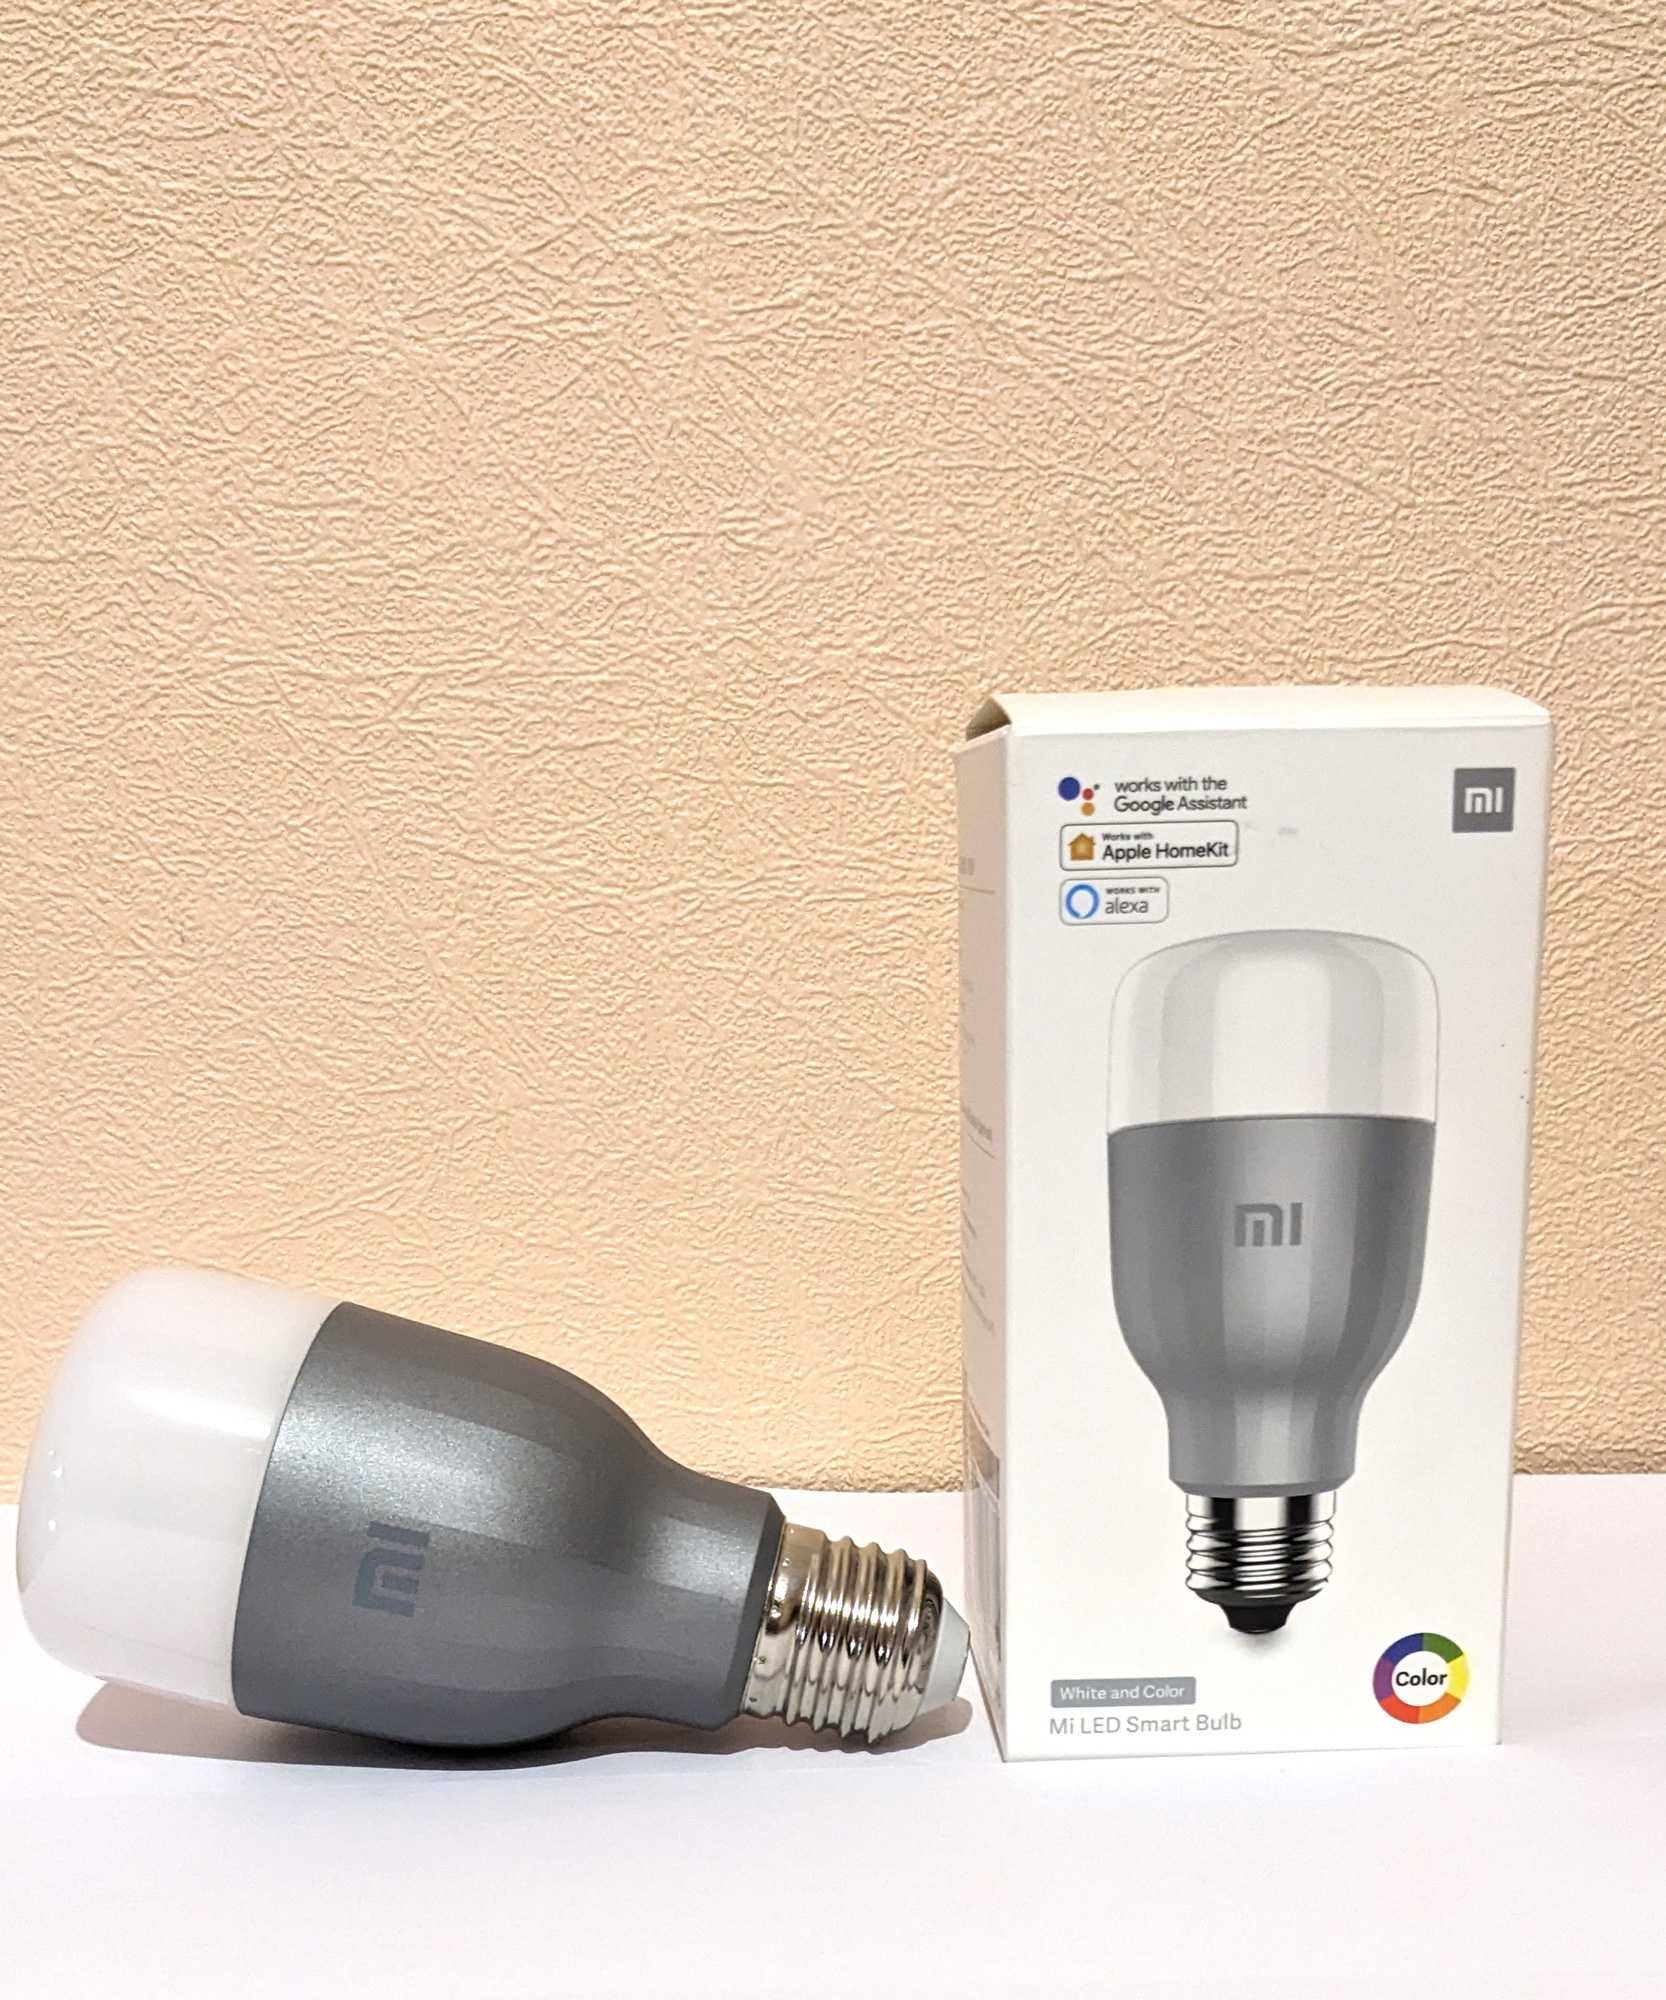 Лампа Mi Smart Bulb (White and Color) (працює з Apple Home Kit)